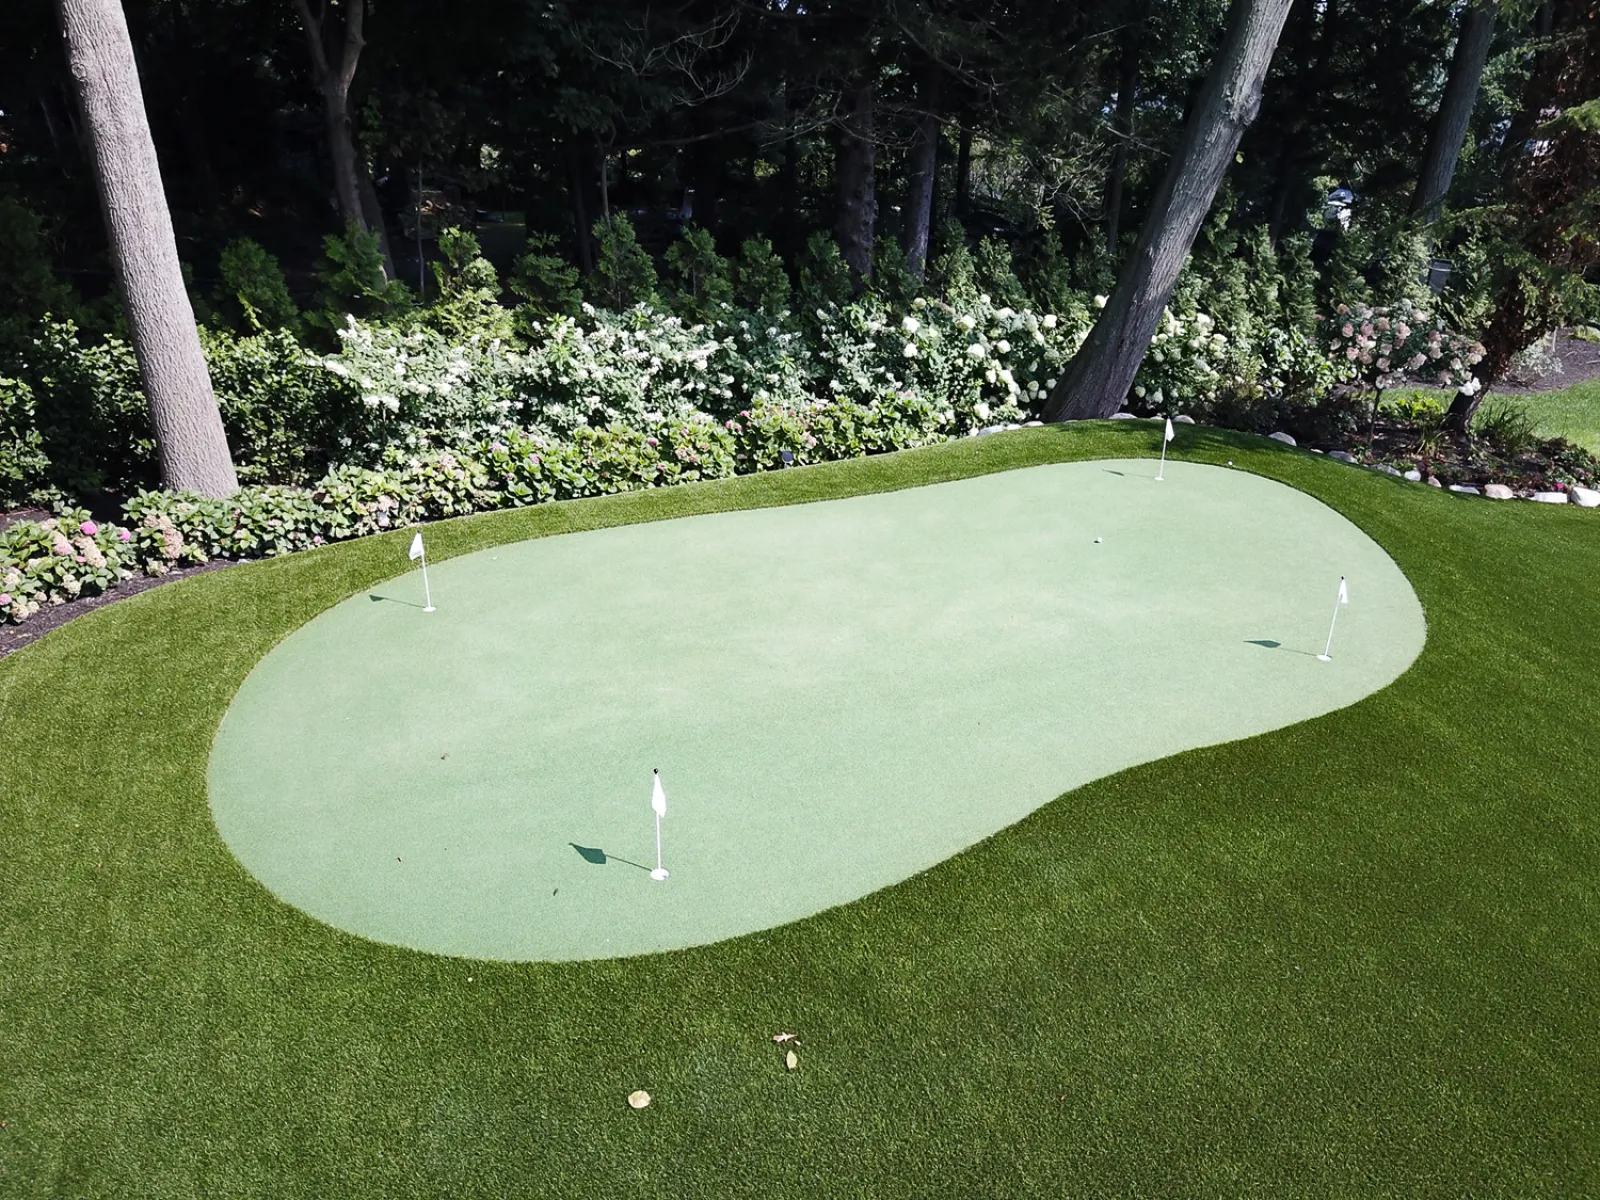 a golf ball on a green golf course